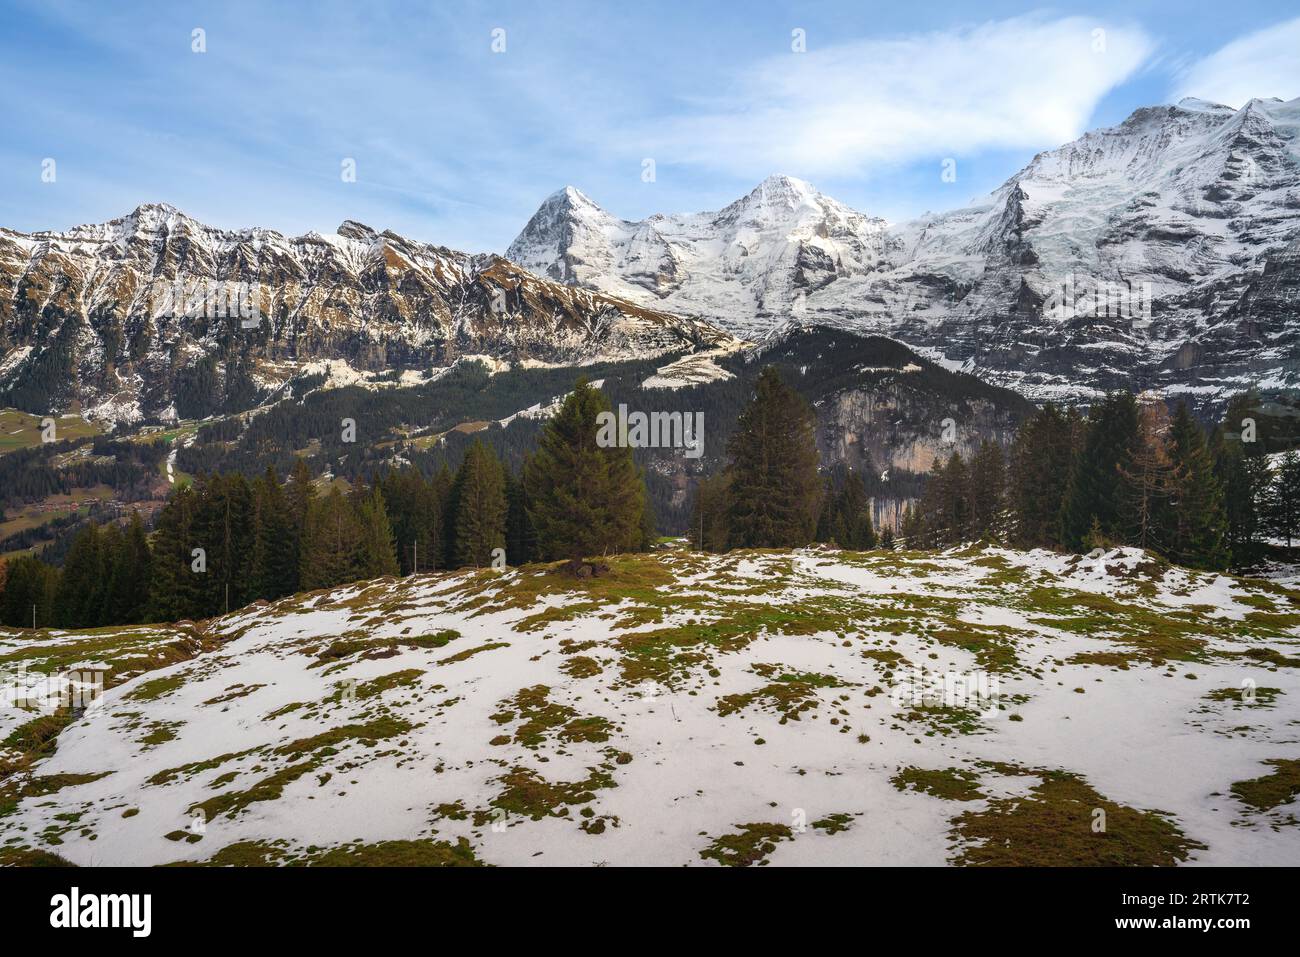 Montagnes de Tschuggen, Eiger et Monch et Jungfrau dans les Alpes suisses - Lauterbrunnen, Suisse Banque D'Images